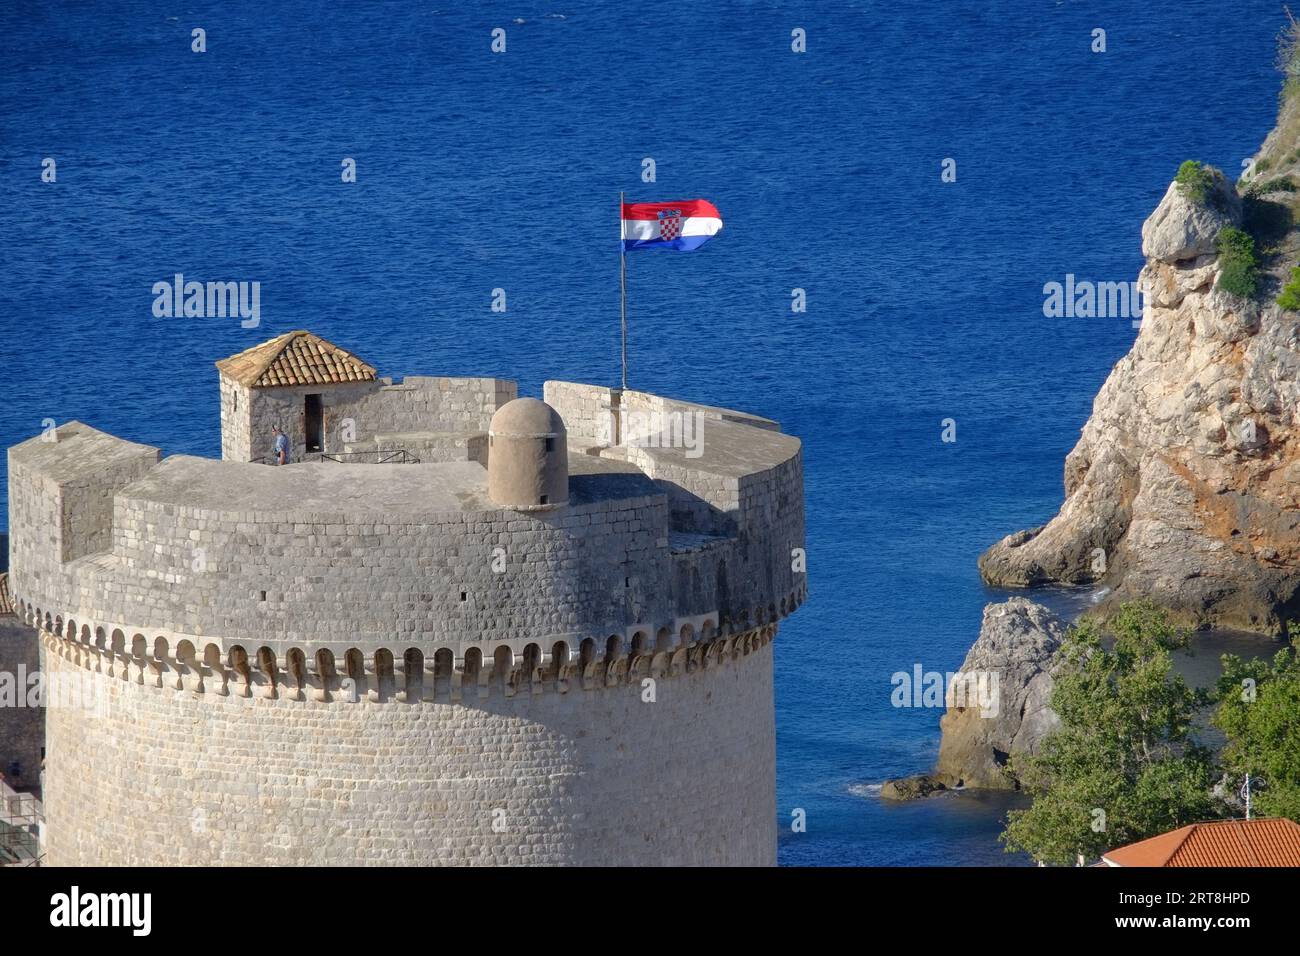 Bandiera della Croazia sulla Torre Minceta contro il mare blu, Dubrovnik, Croazia Foto Stock